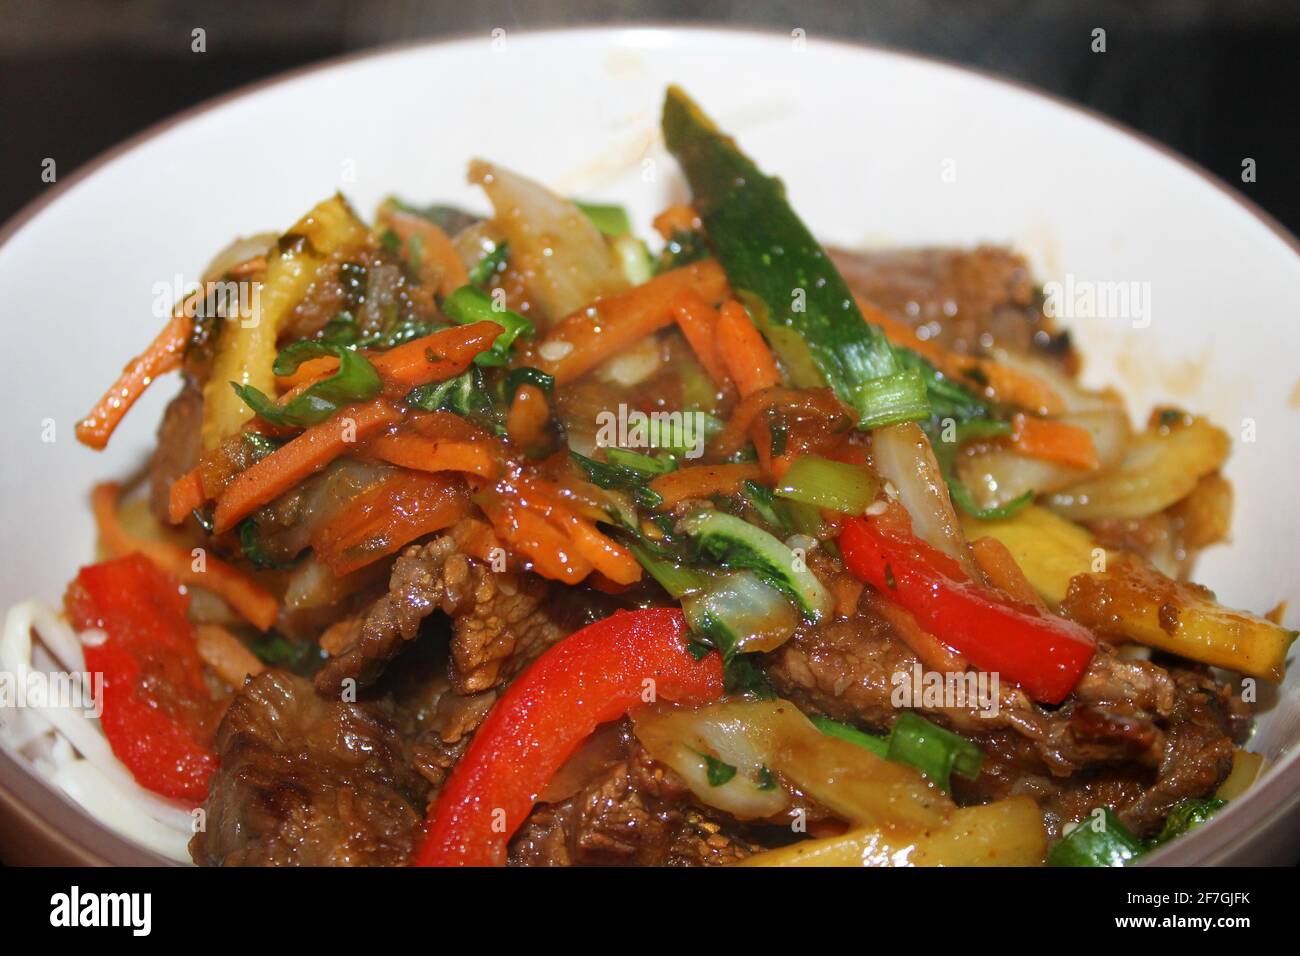 A close-up of the Korean beef stir-fry, Bulgogi, in a bowl. Stock Photo